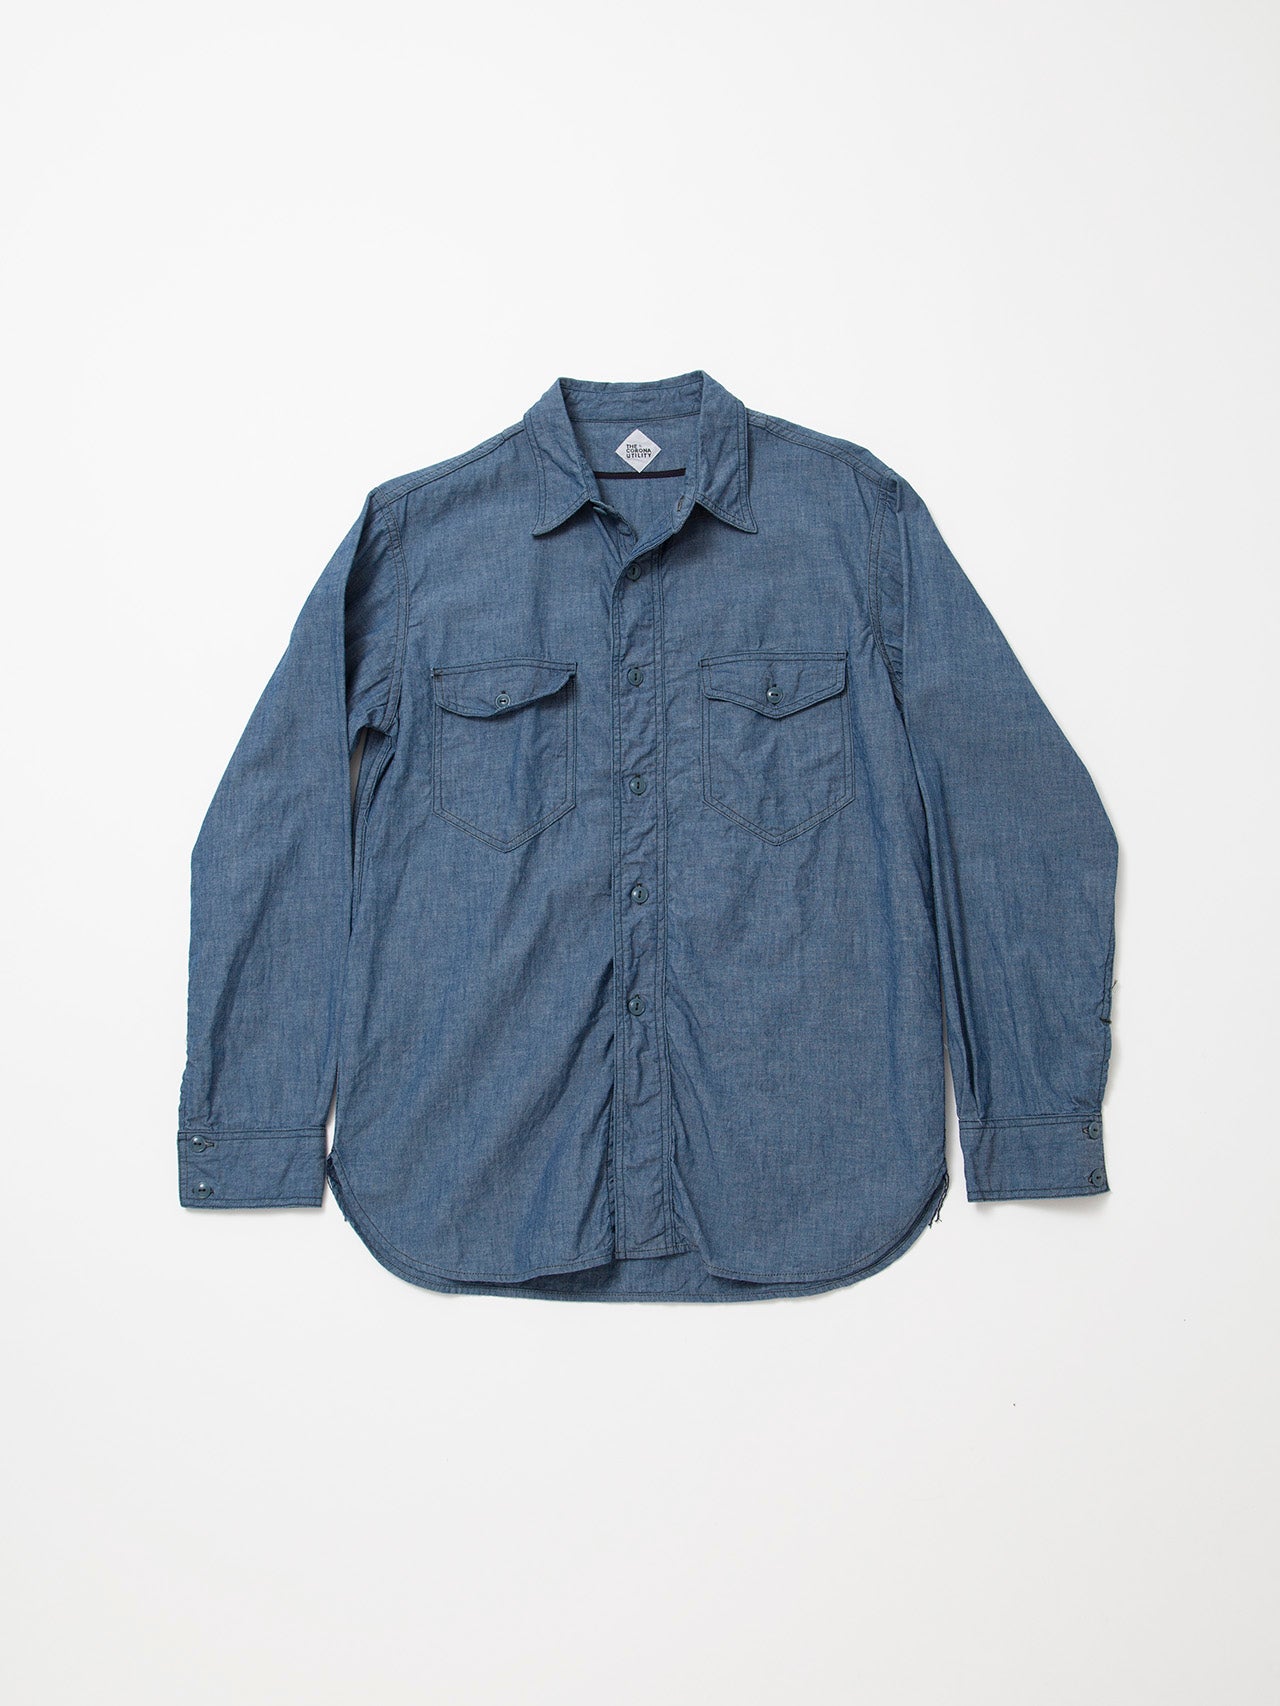 CS002 - CORONA・NAVY 2Pocket Shirt / Cotton Blue Chambray